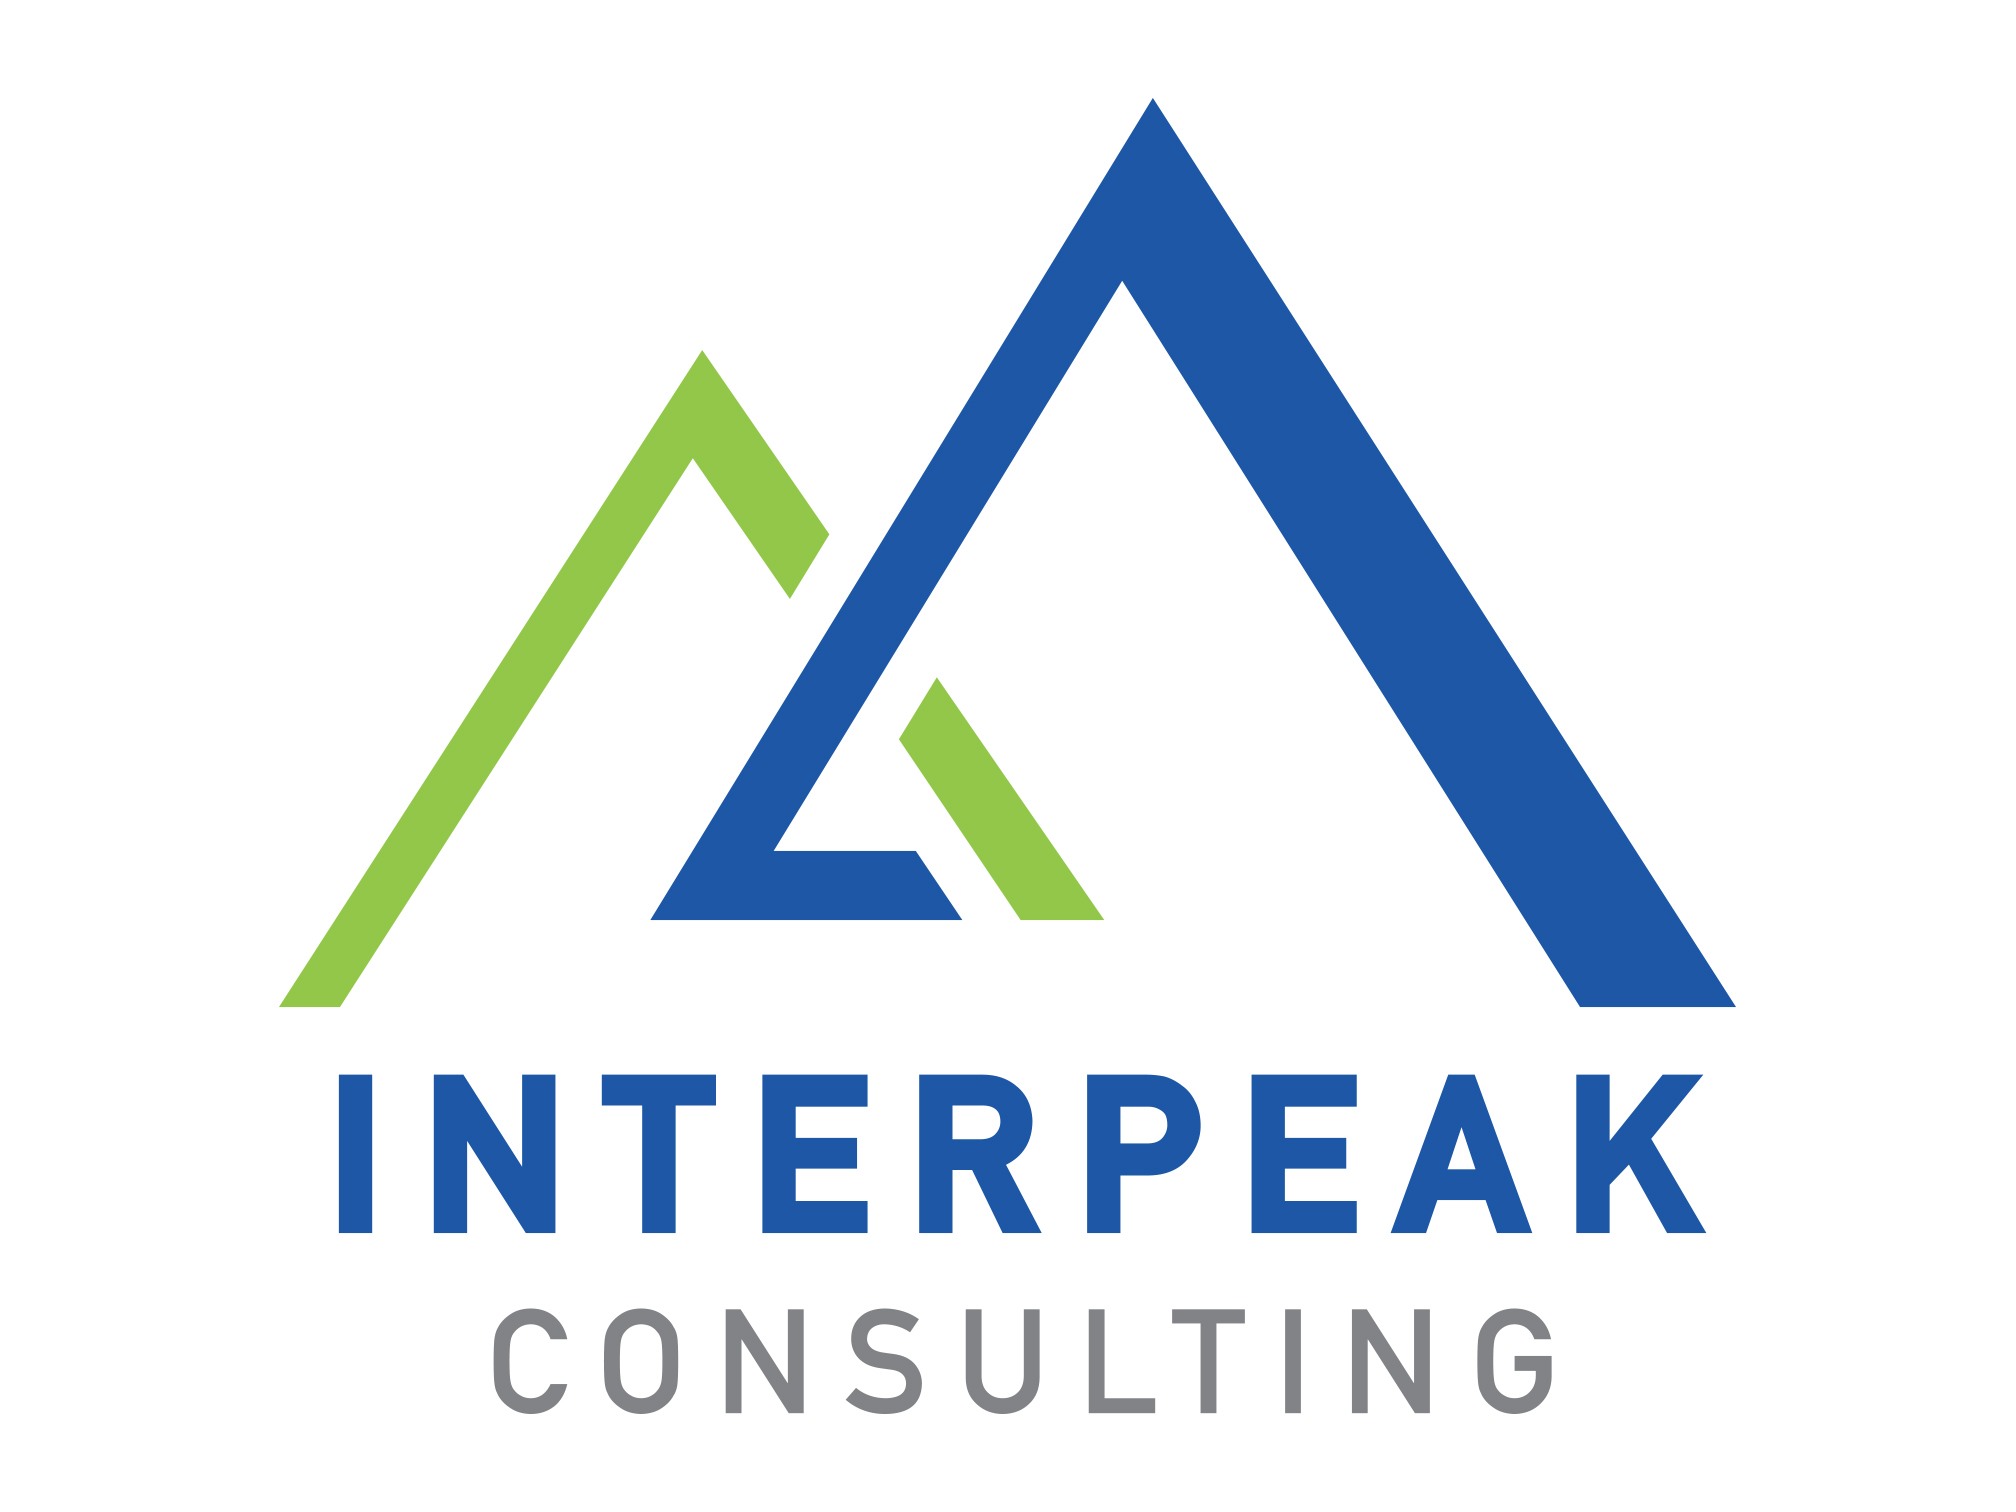 InterpeakConsulting.com